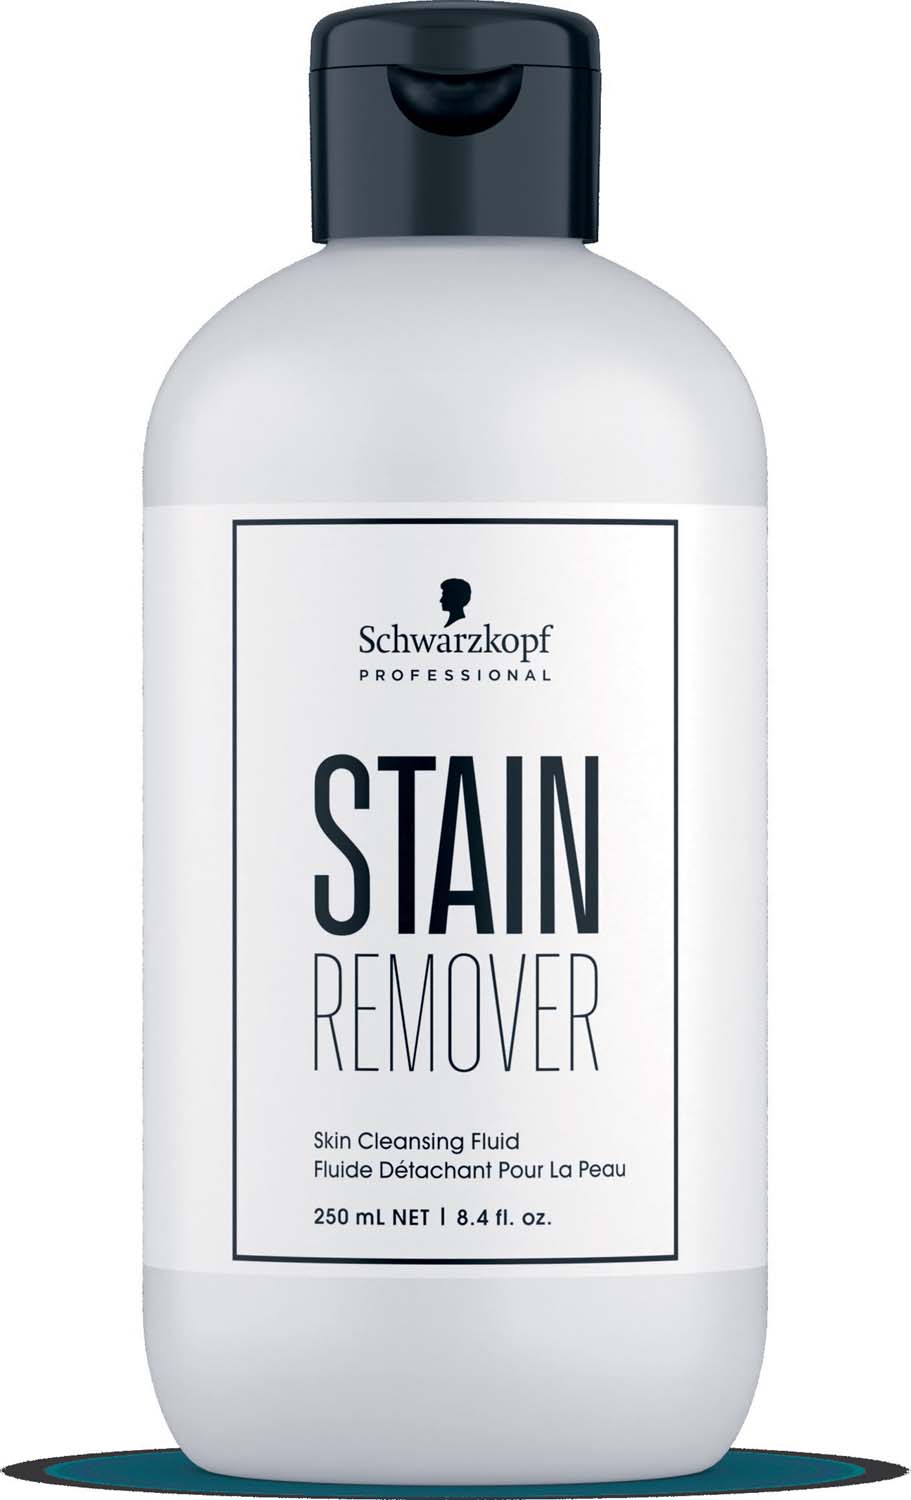 Stain Remover, Hautreinigendes Fluid